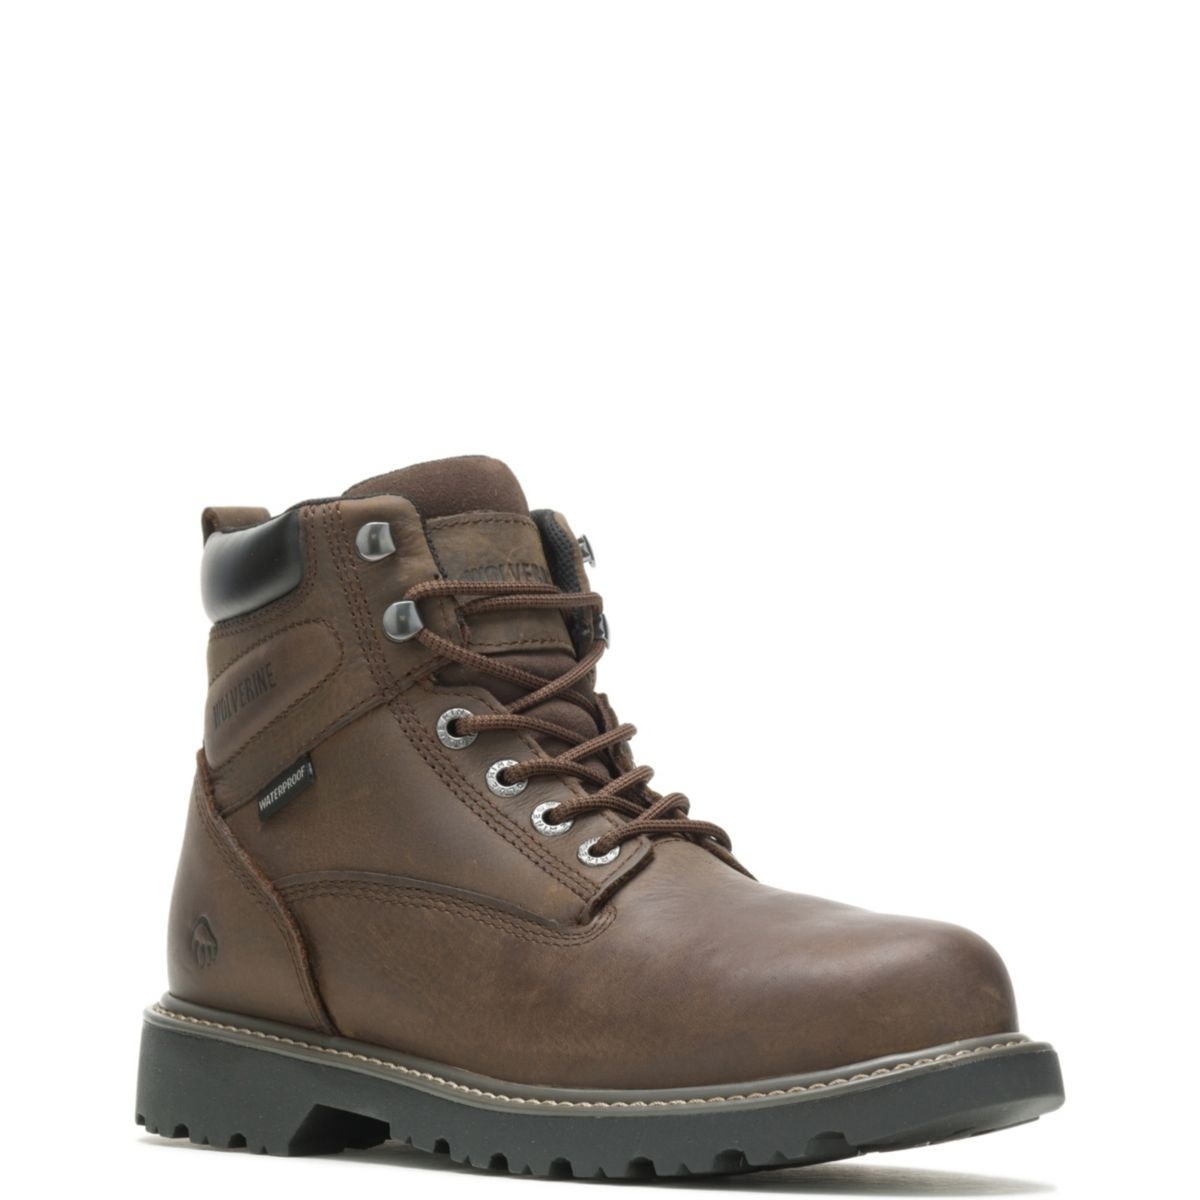 WOLVERINE Men's Floorhand 6 Waterproof Steel Toe Work Boot Dark Brown - W10633 DARK BROWN - DARK BROWN, 8